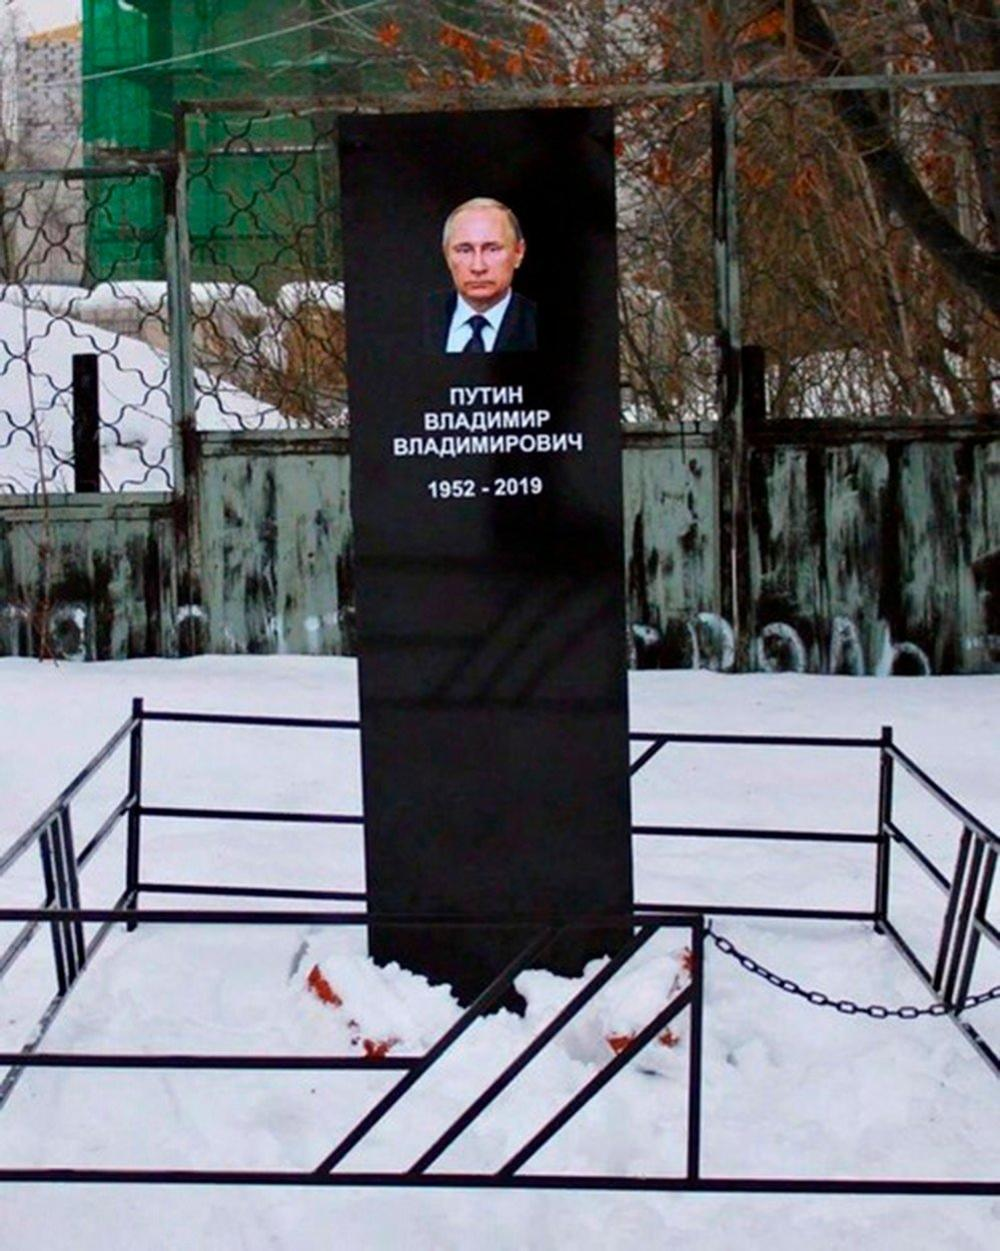 Pojavil se je Putinov nagrobni spomenik z letnico smrti